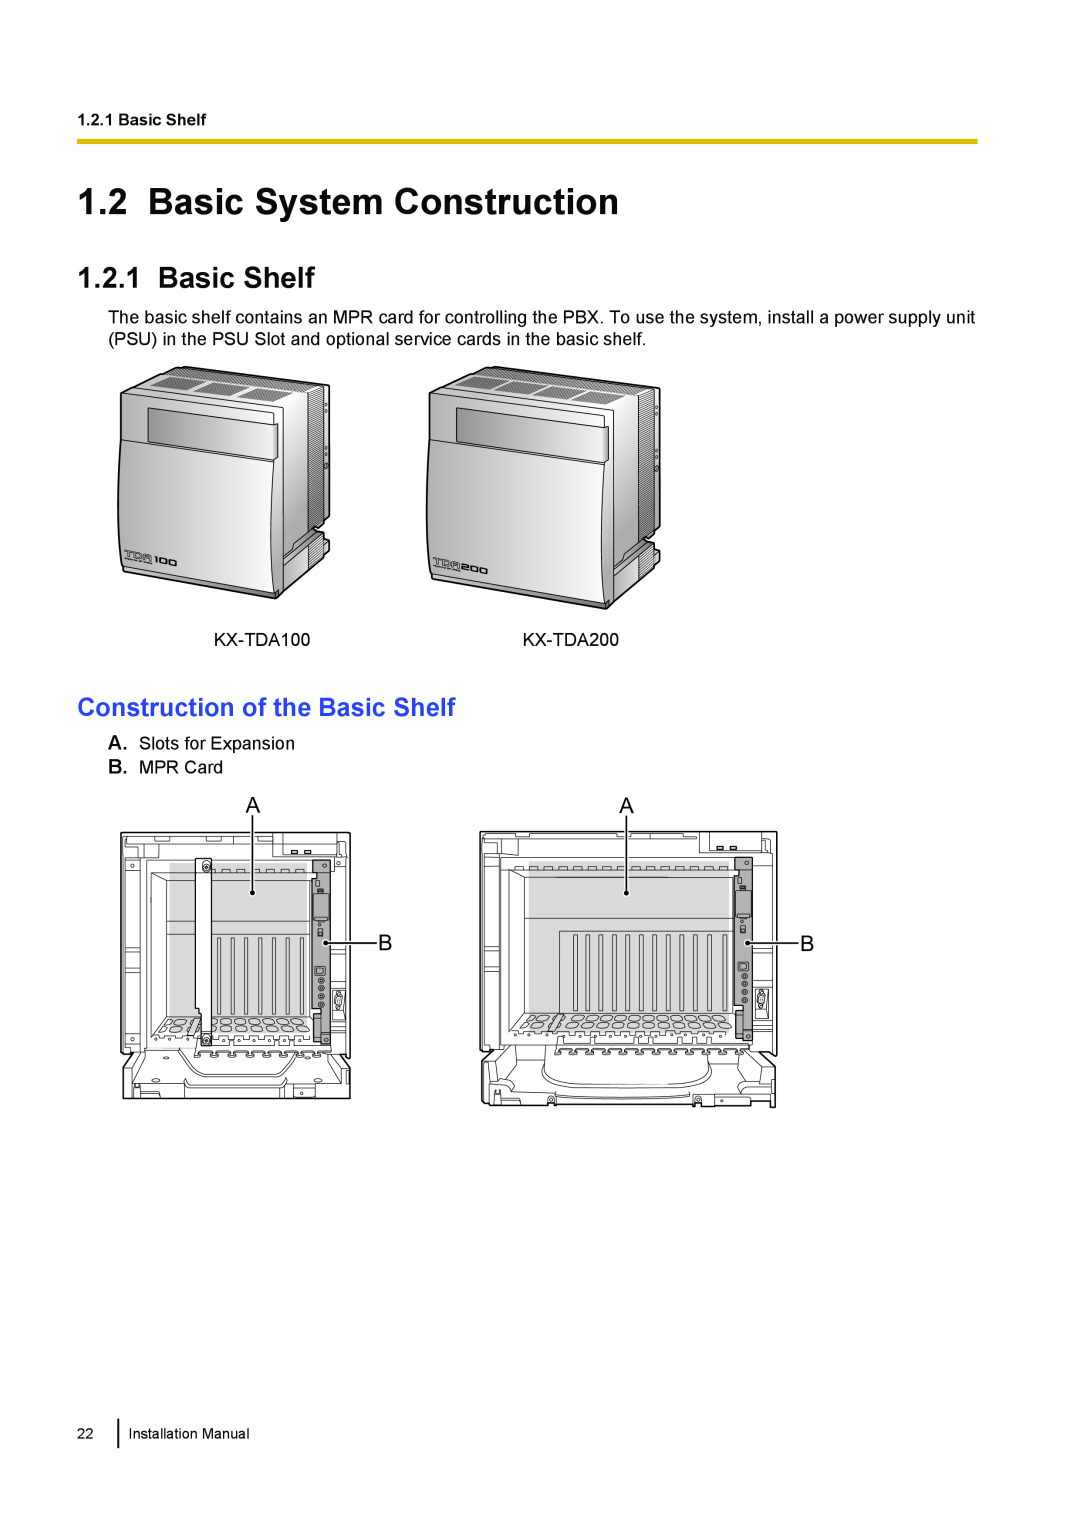 Panasonic KX-TDA100 installation manual Basic System Construction, Construction of the Basic Shelf 